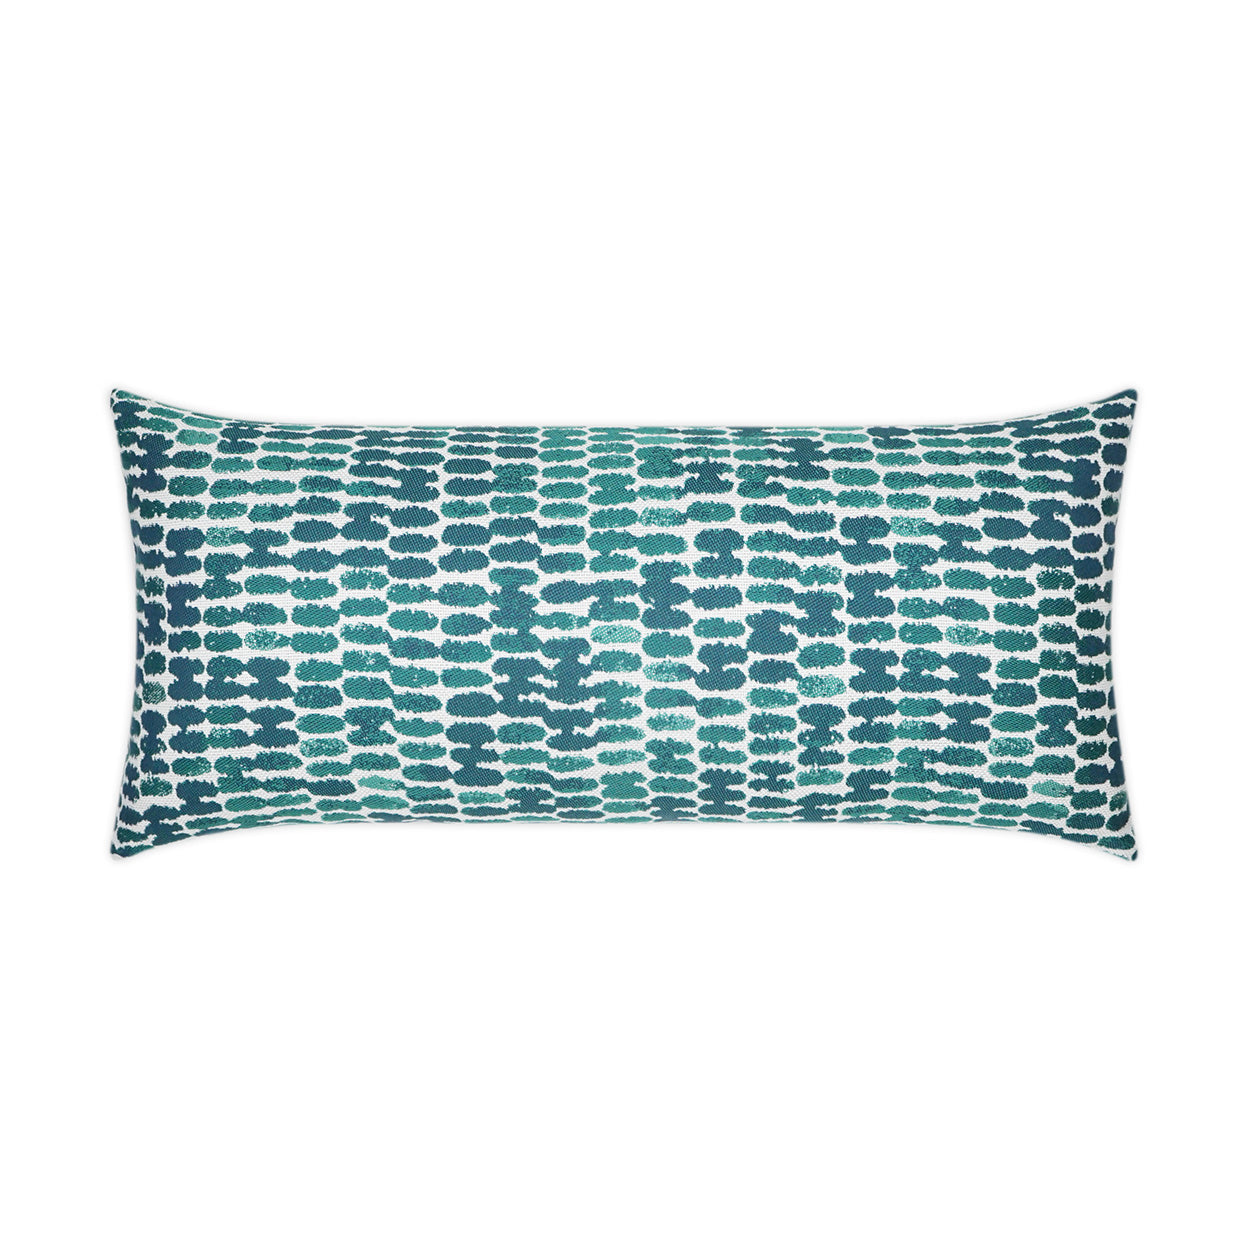 Outdoor Reach Lumbar Pillow - Turquoise